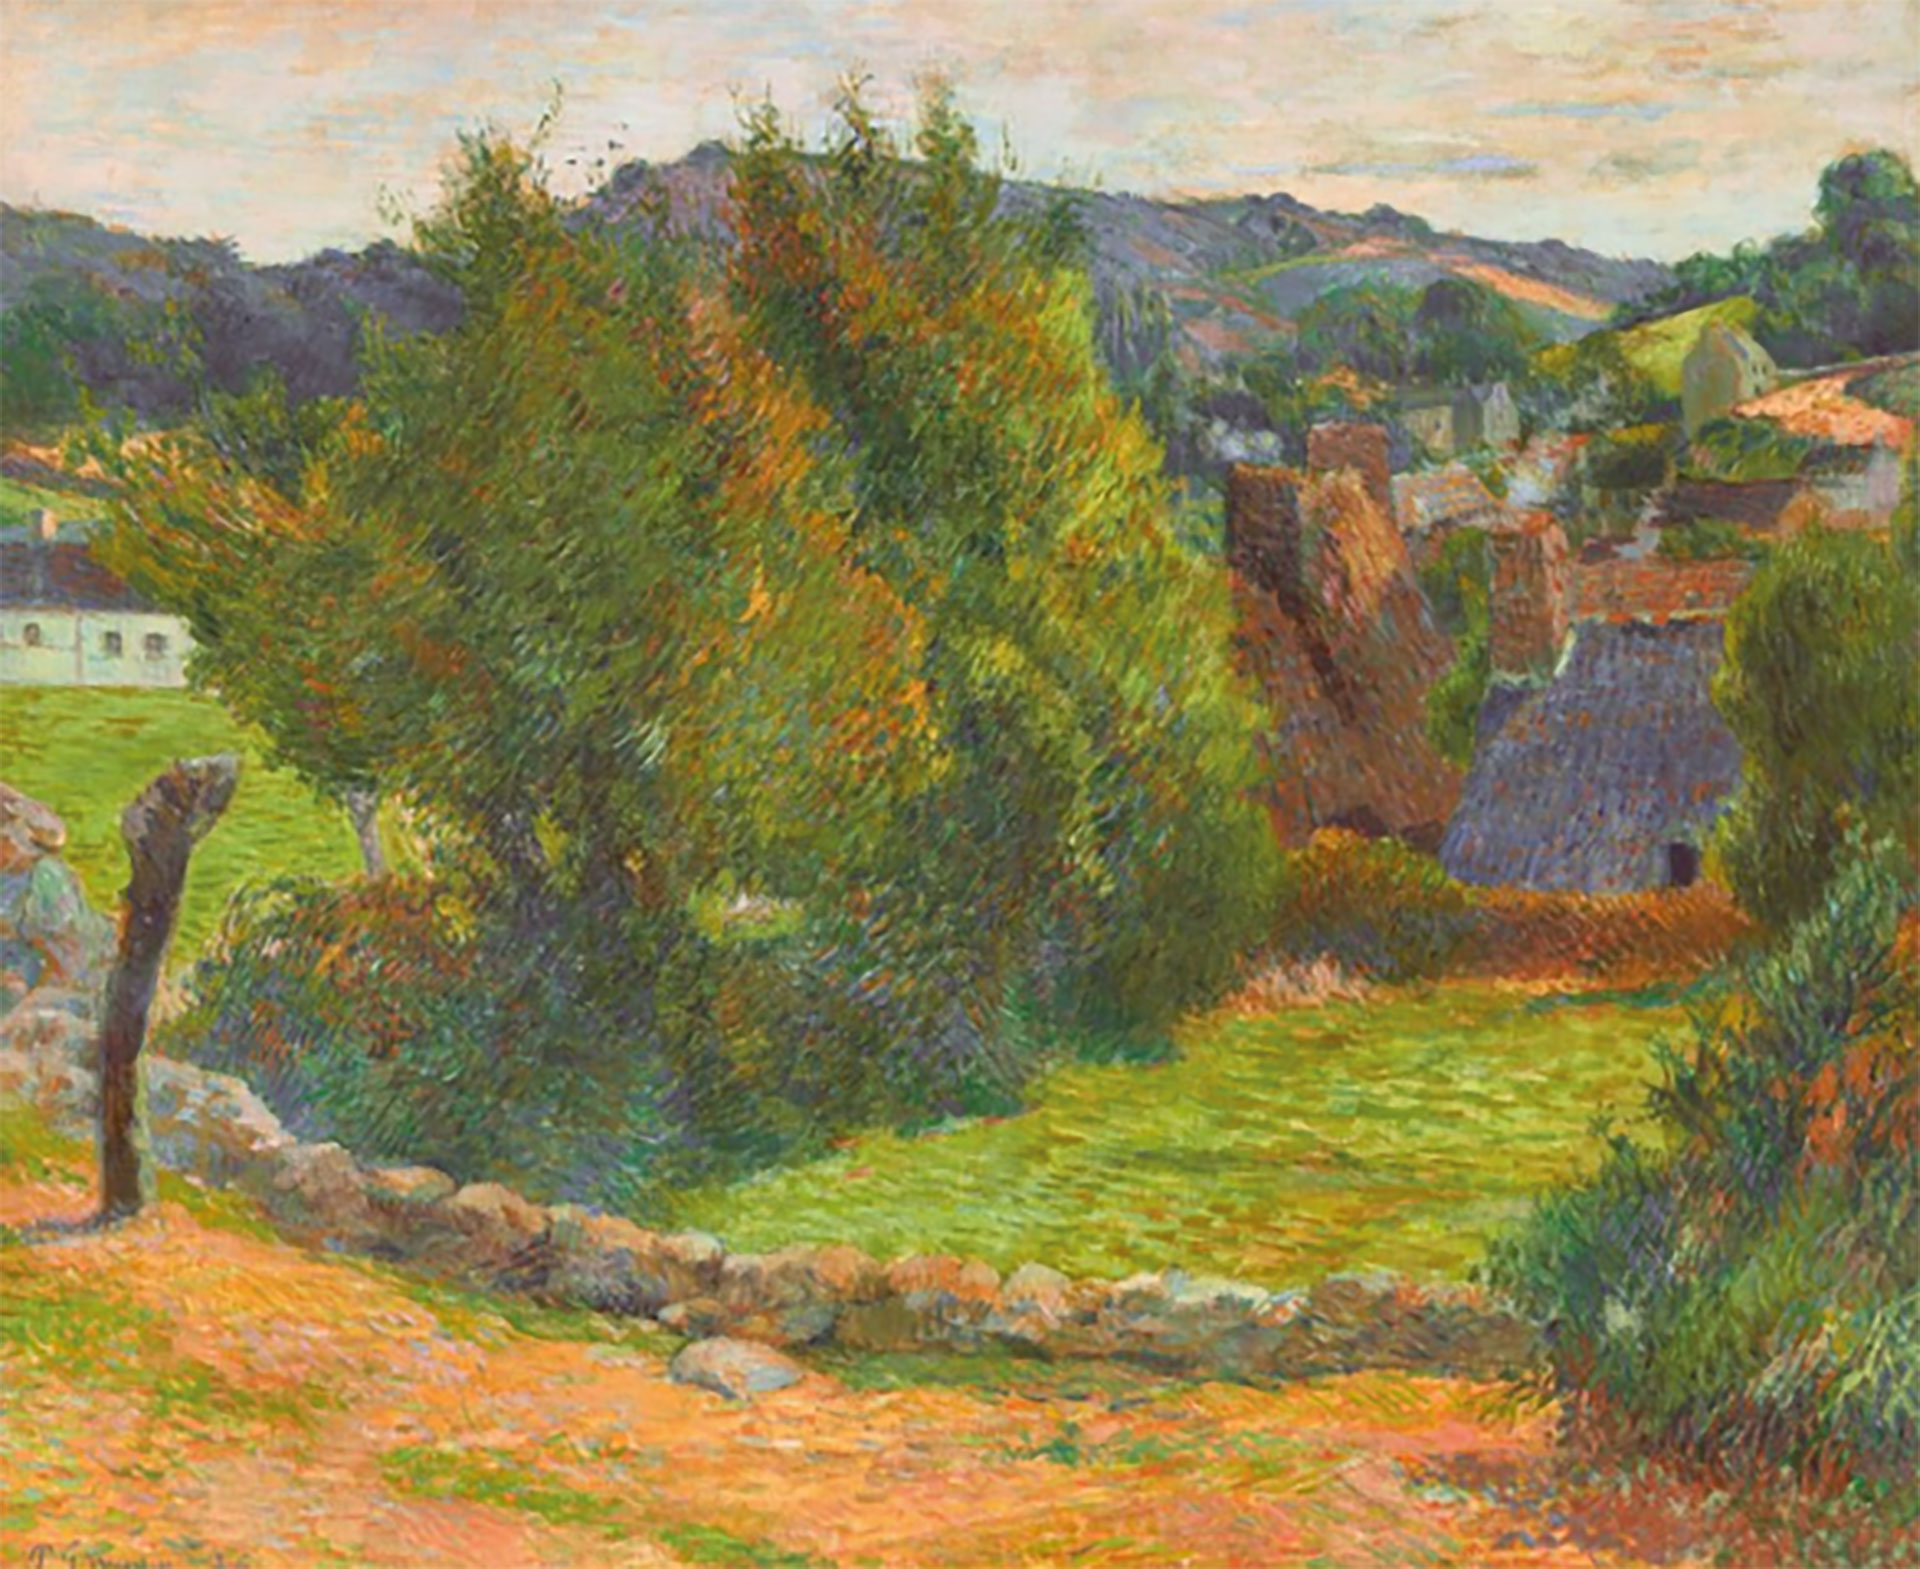 La casa Christie's subastó "La Montagne Sainte-Marguerite vue des environs du presbytère", un retrato de la campiña francesa realizado por Gauguin